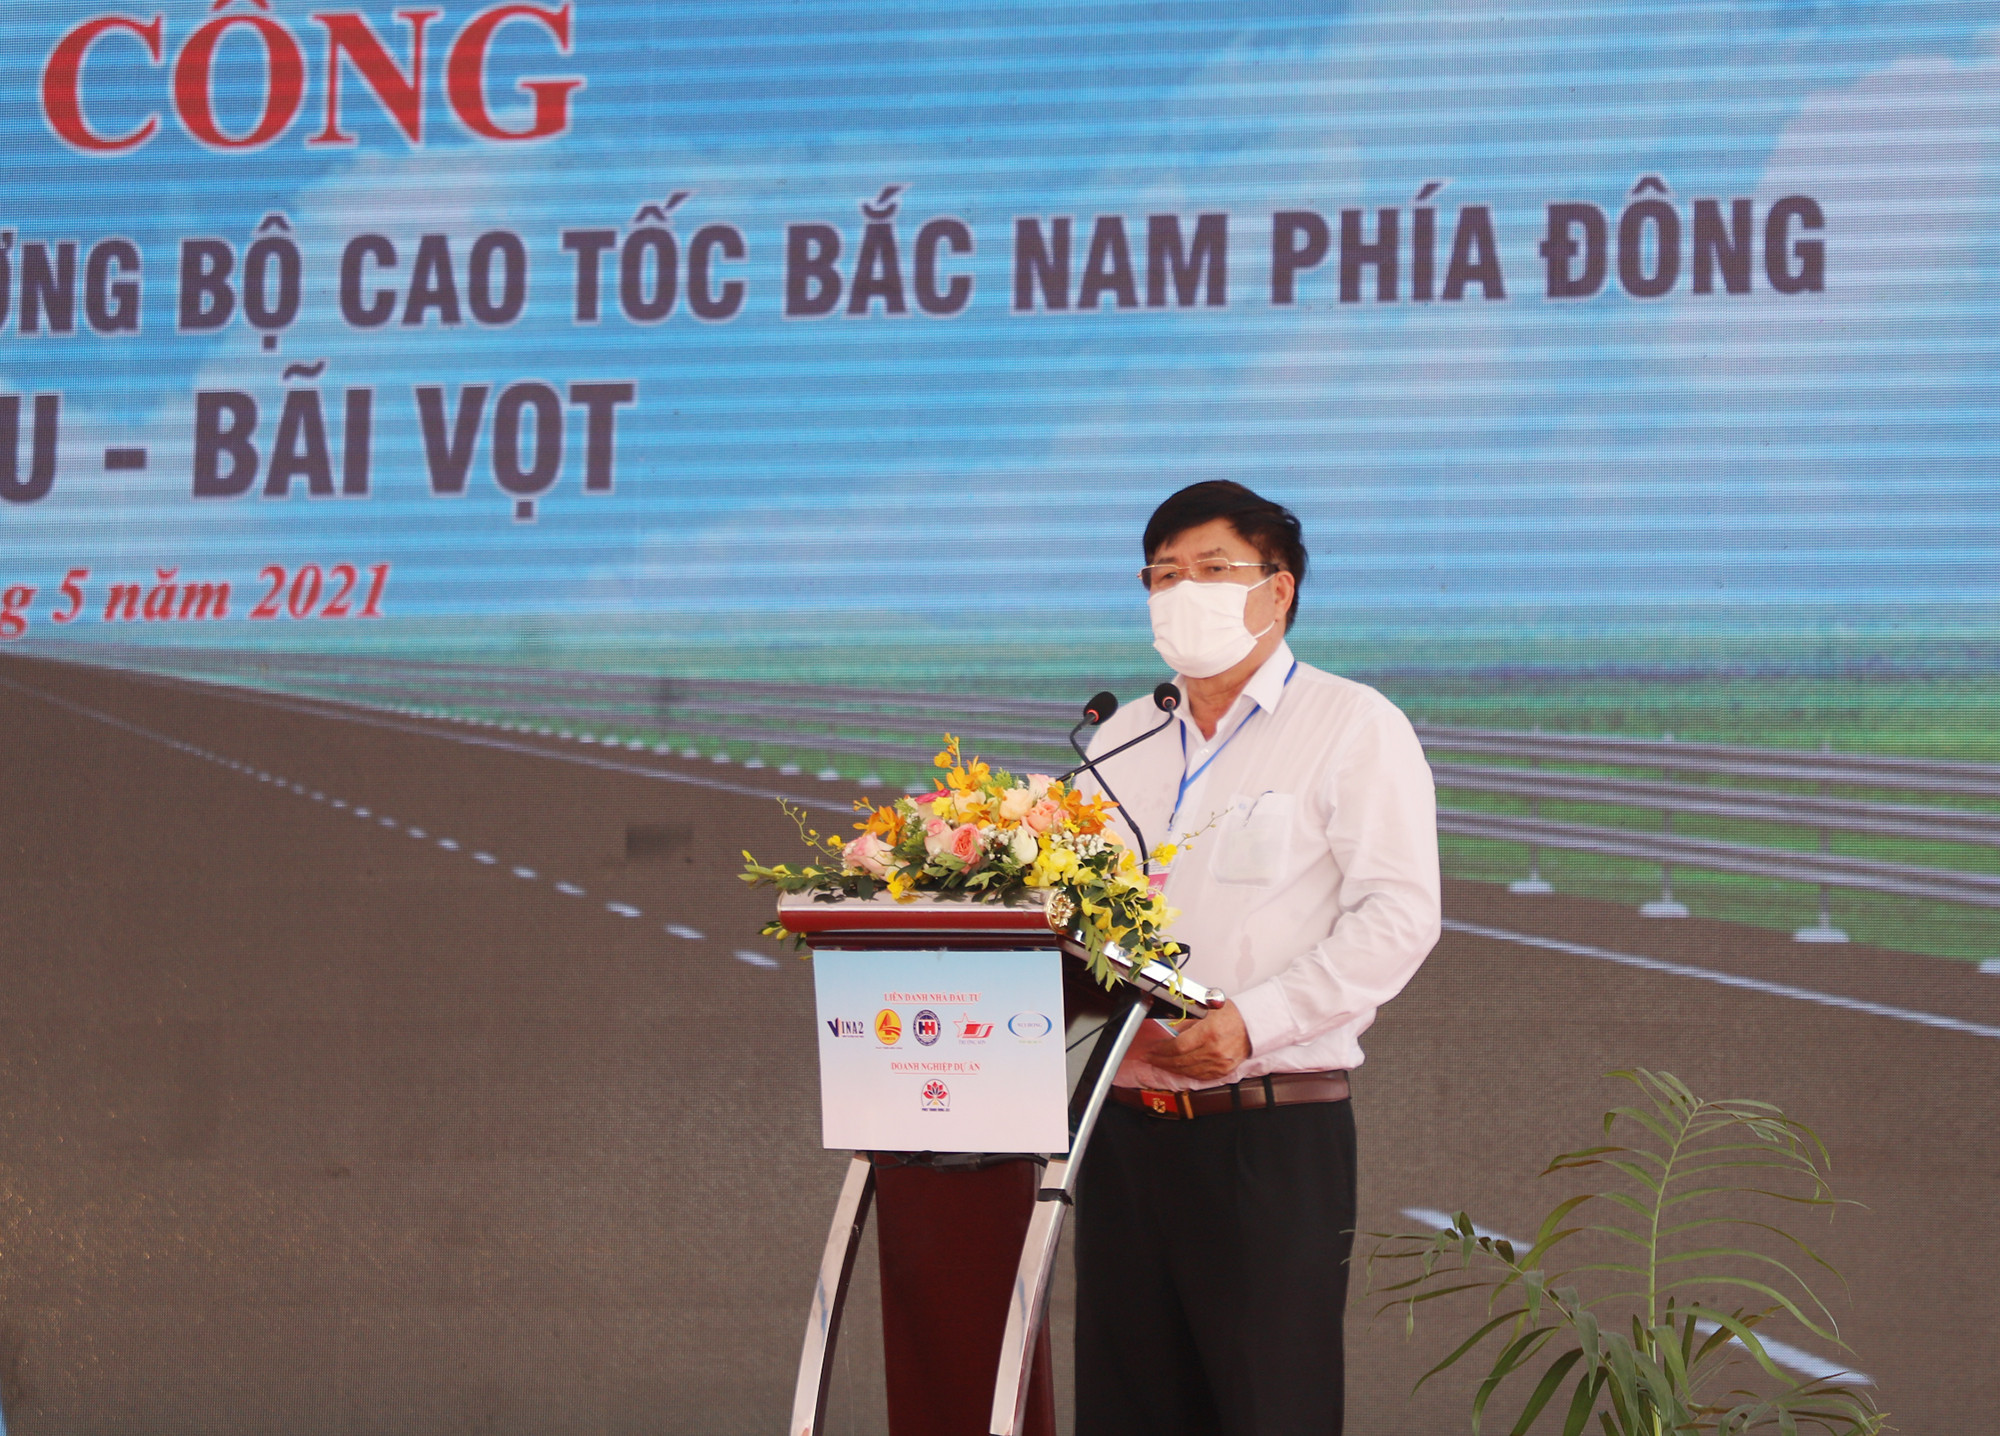 Đại diện liên danh nhà đầu tư, ông Phạm Đình Hạnh - Chủ tịch HĐQT Công ty TNHH Hòa Hiệp phát biểu tại buổi lễ. Ảnh: Phạm Bằng